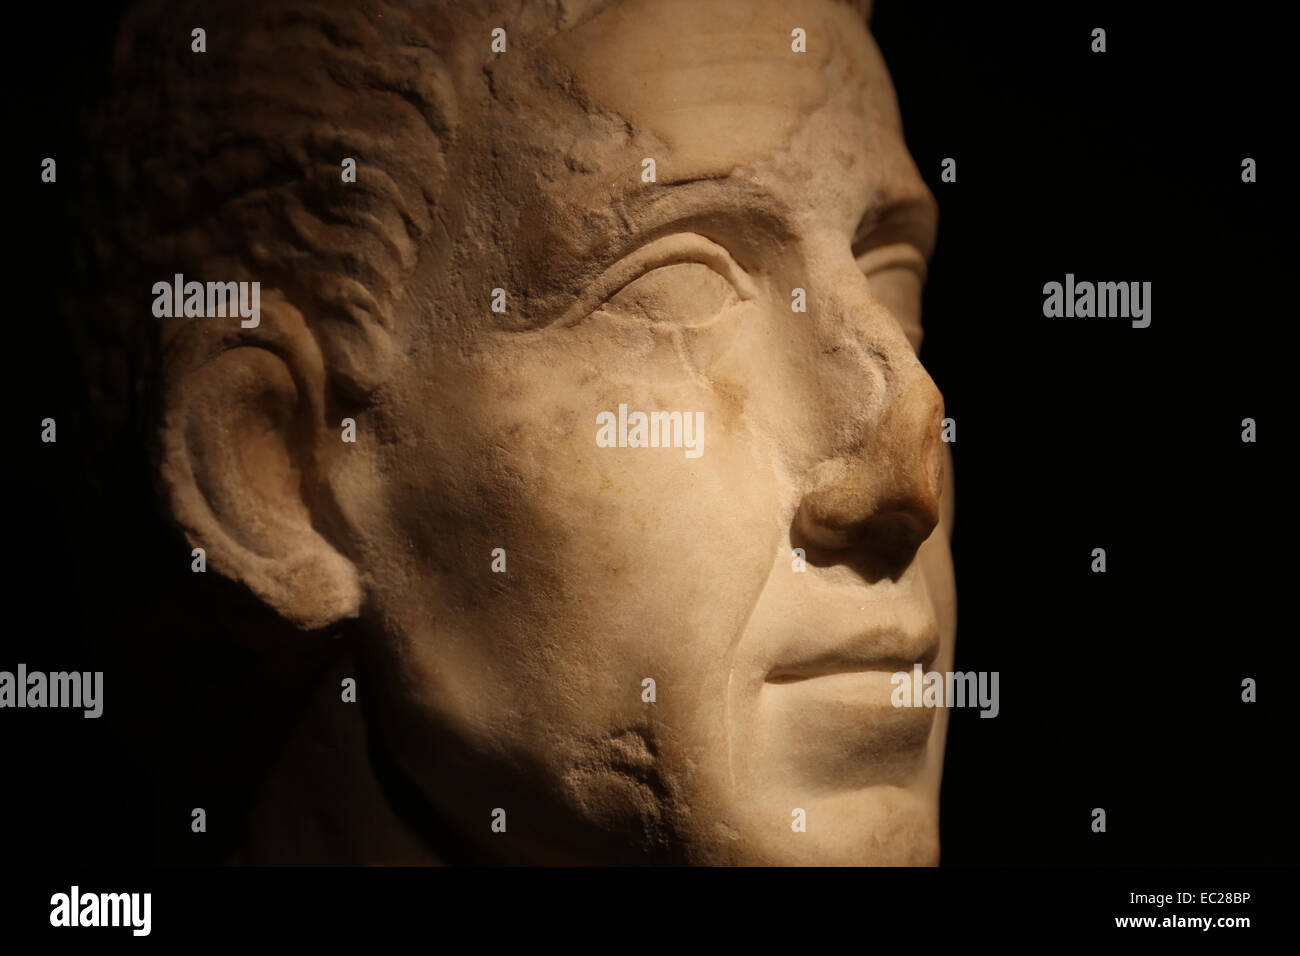 L'art romain portrait funéraire.1c. AD. Fouilles de l'enceinte romaine de Barcino (Barcelone) maintenant. Musée d'histoire de la ville de Barcelone Banque D'Images